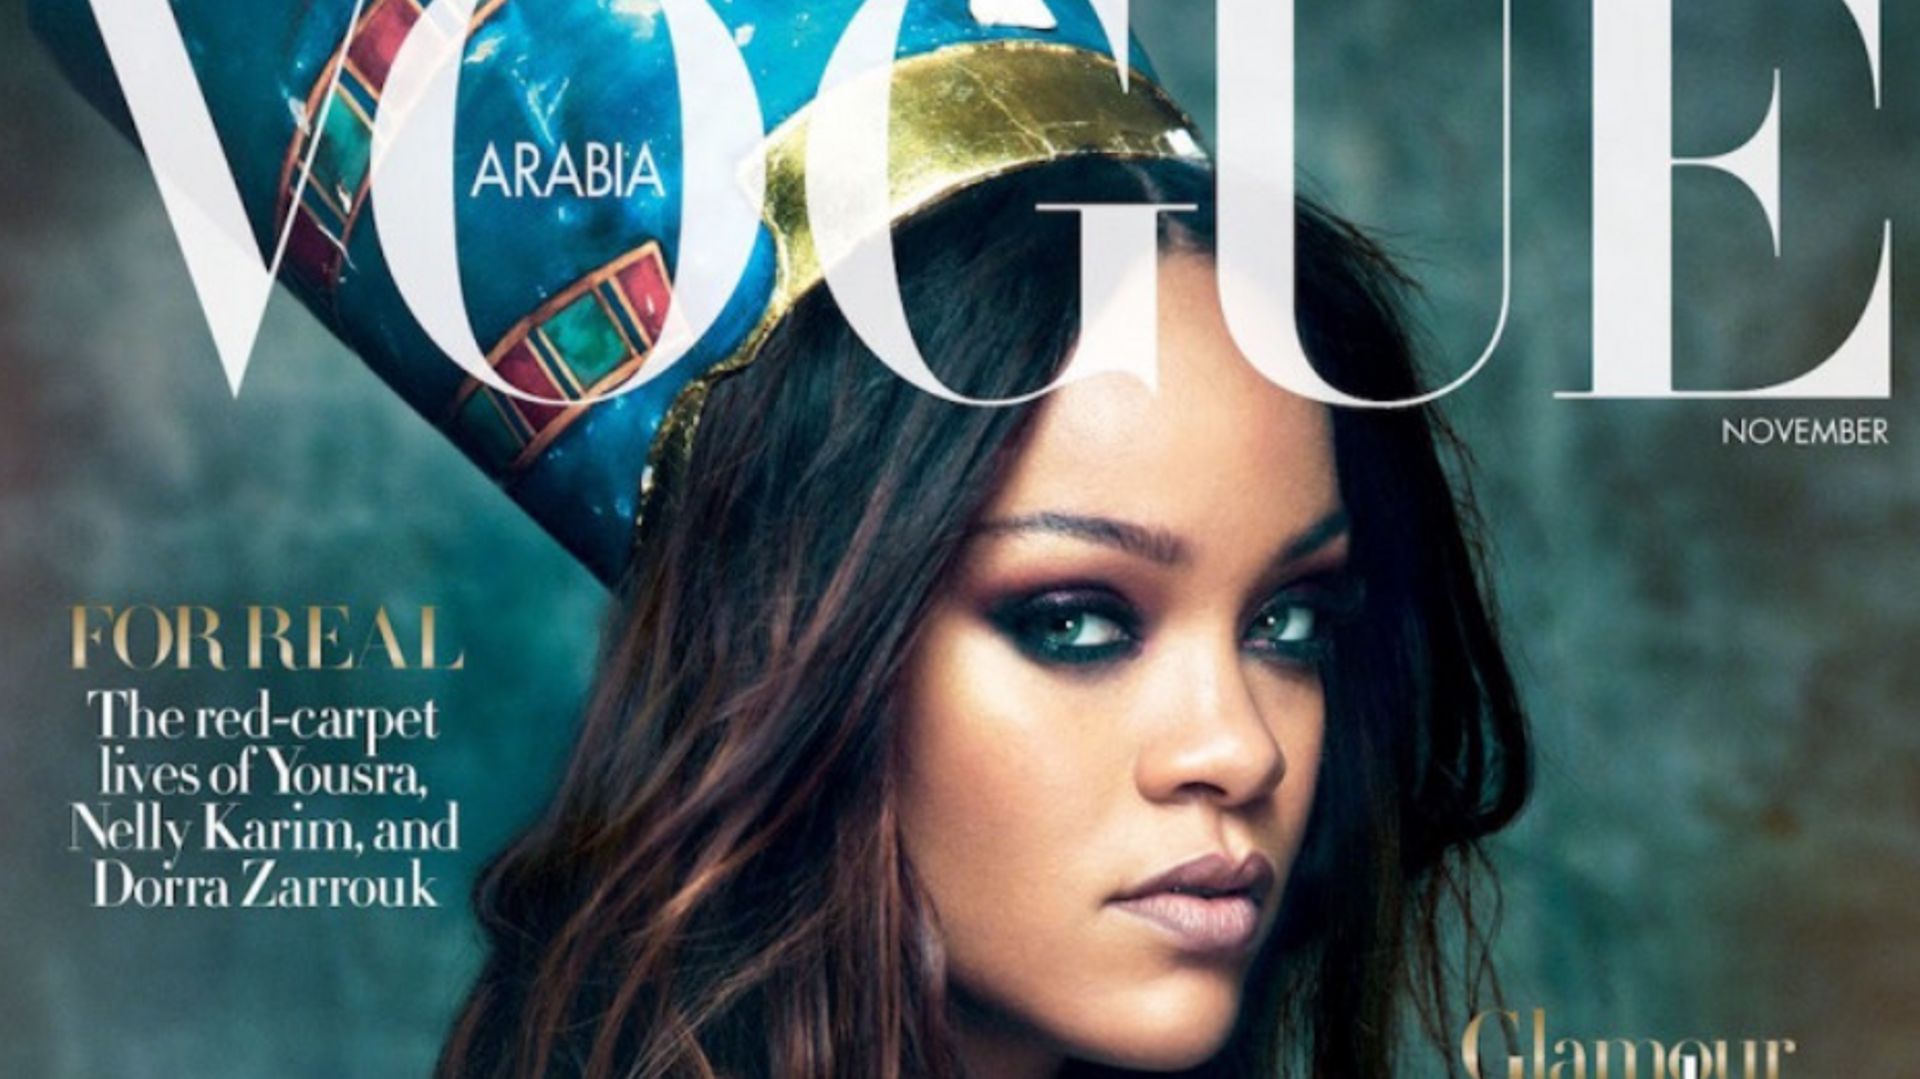 Couverture du magazine "Vogue Arabia" en novembre 2017. Rihanna pose en hommage à Nefertiti.